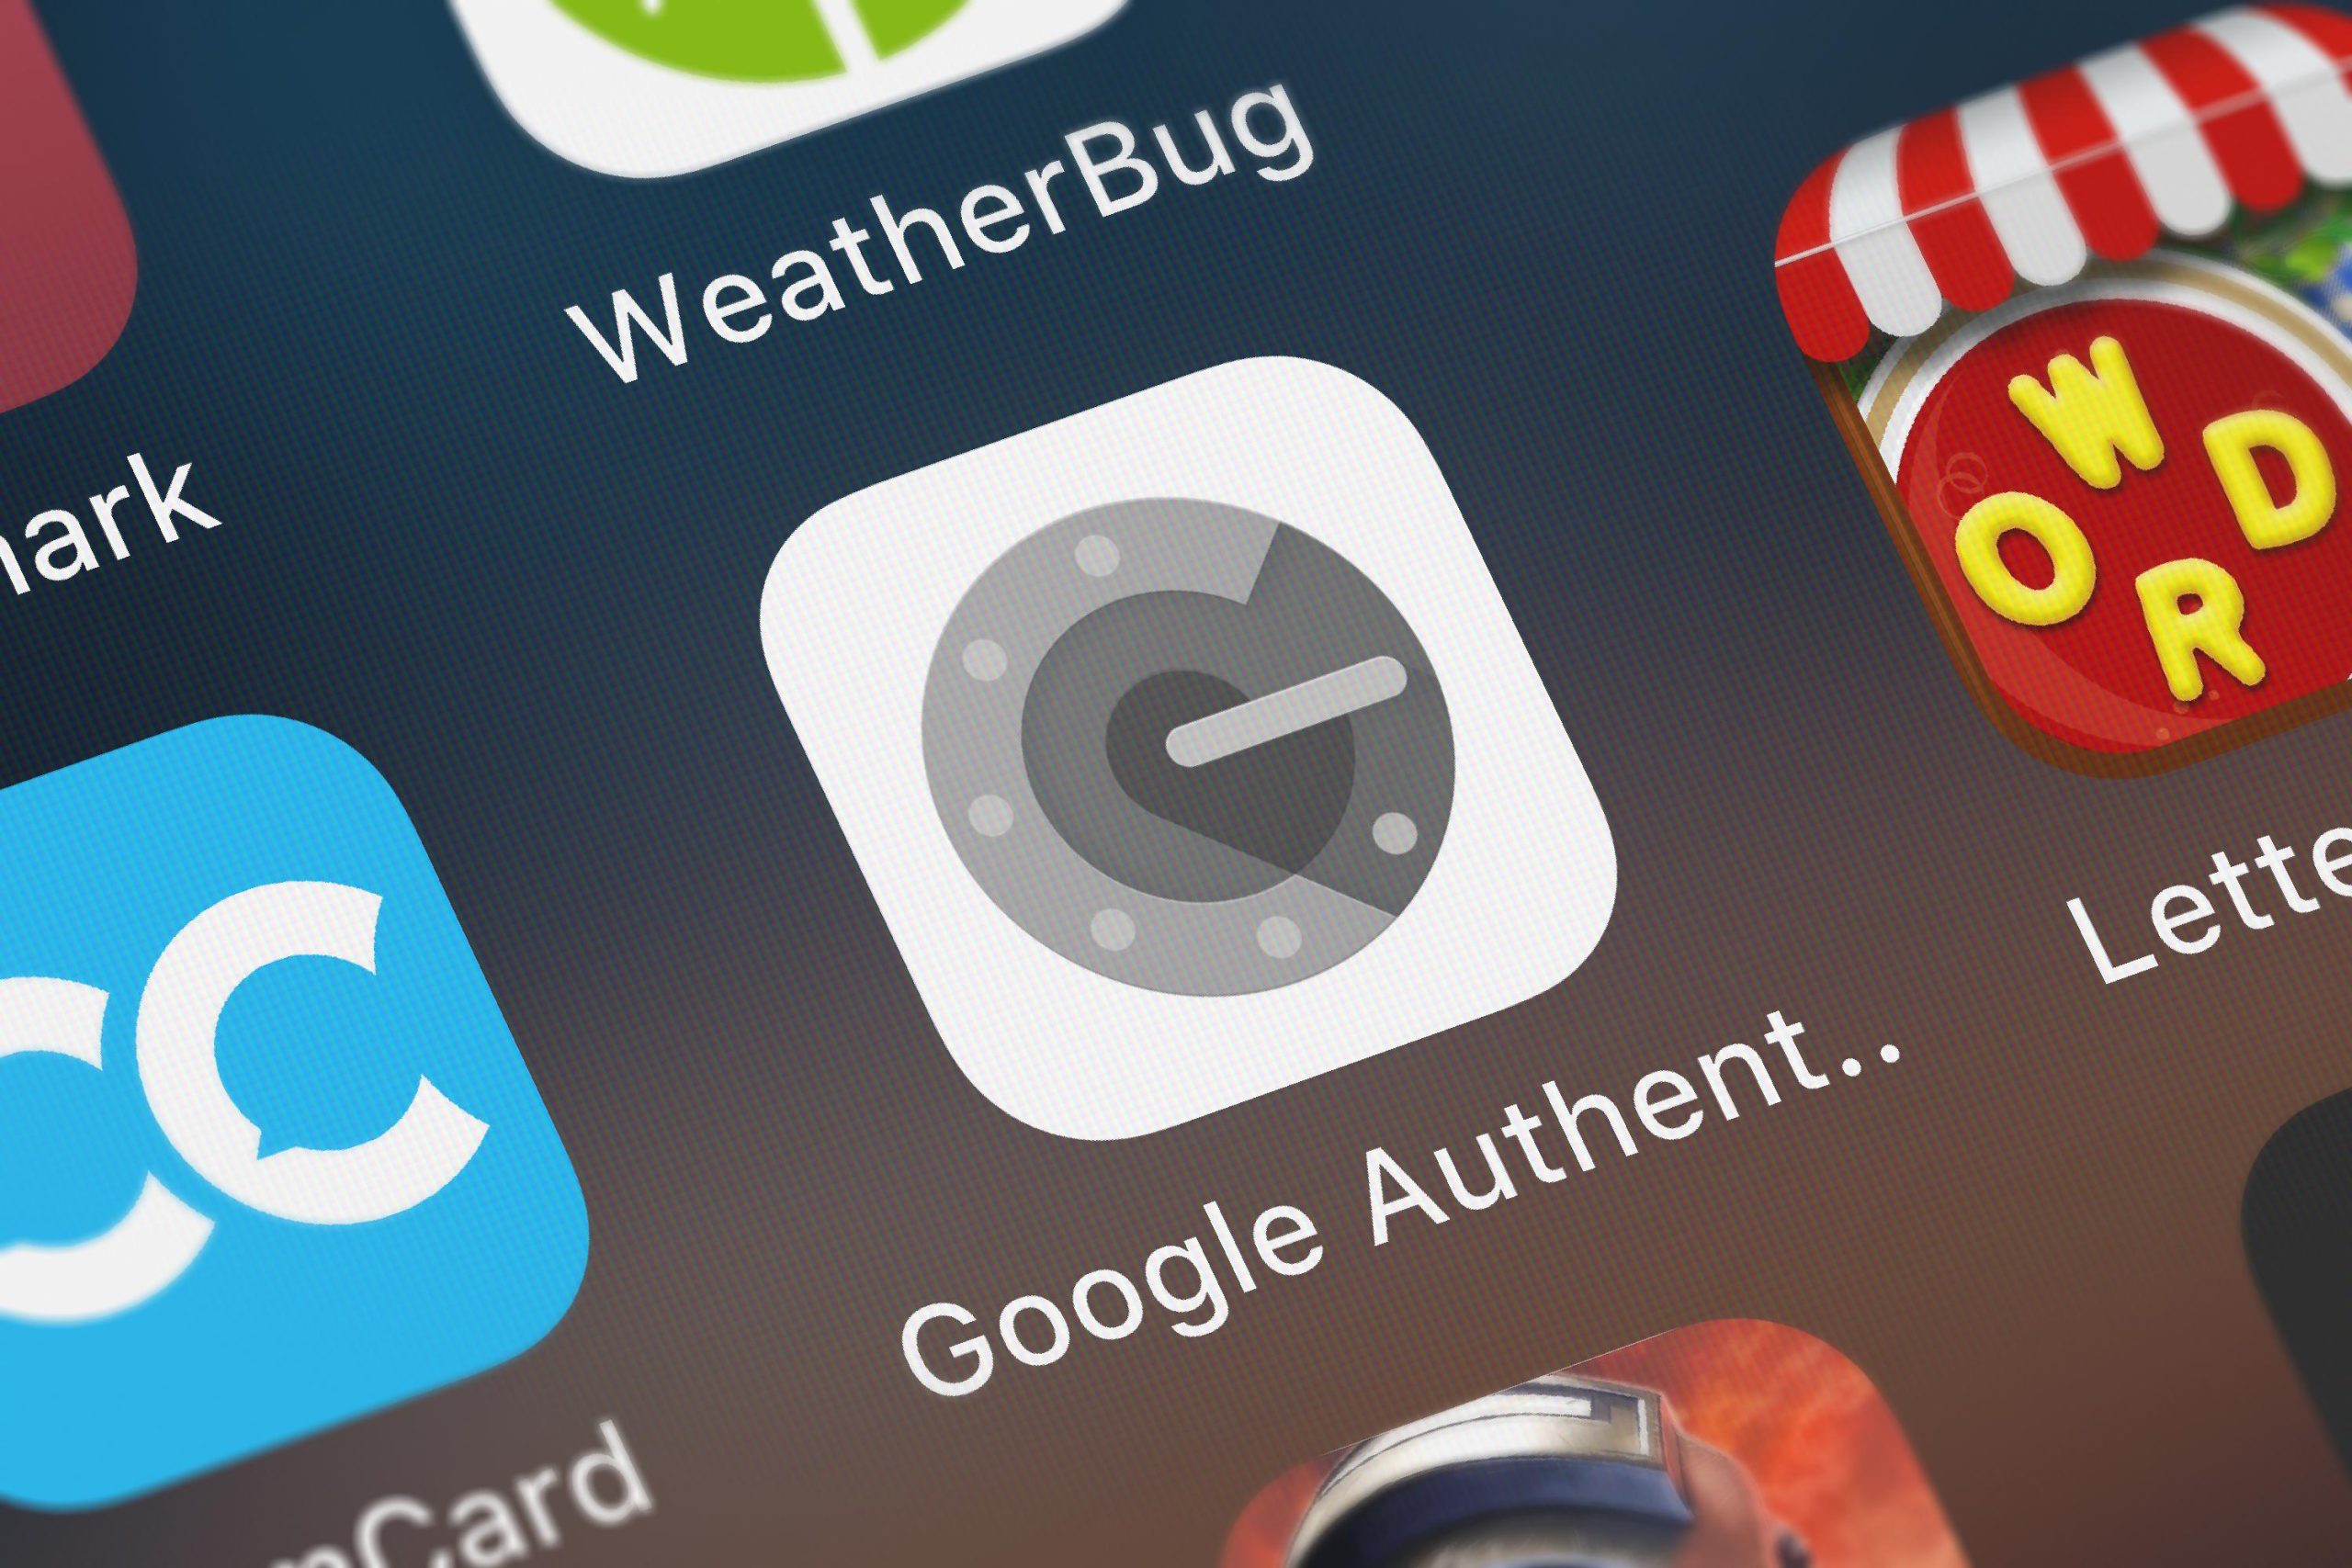 Imagem mostra o Google Authenticator na tela de um smartphone